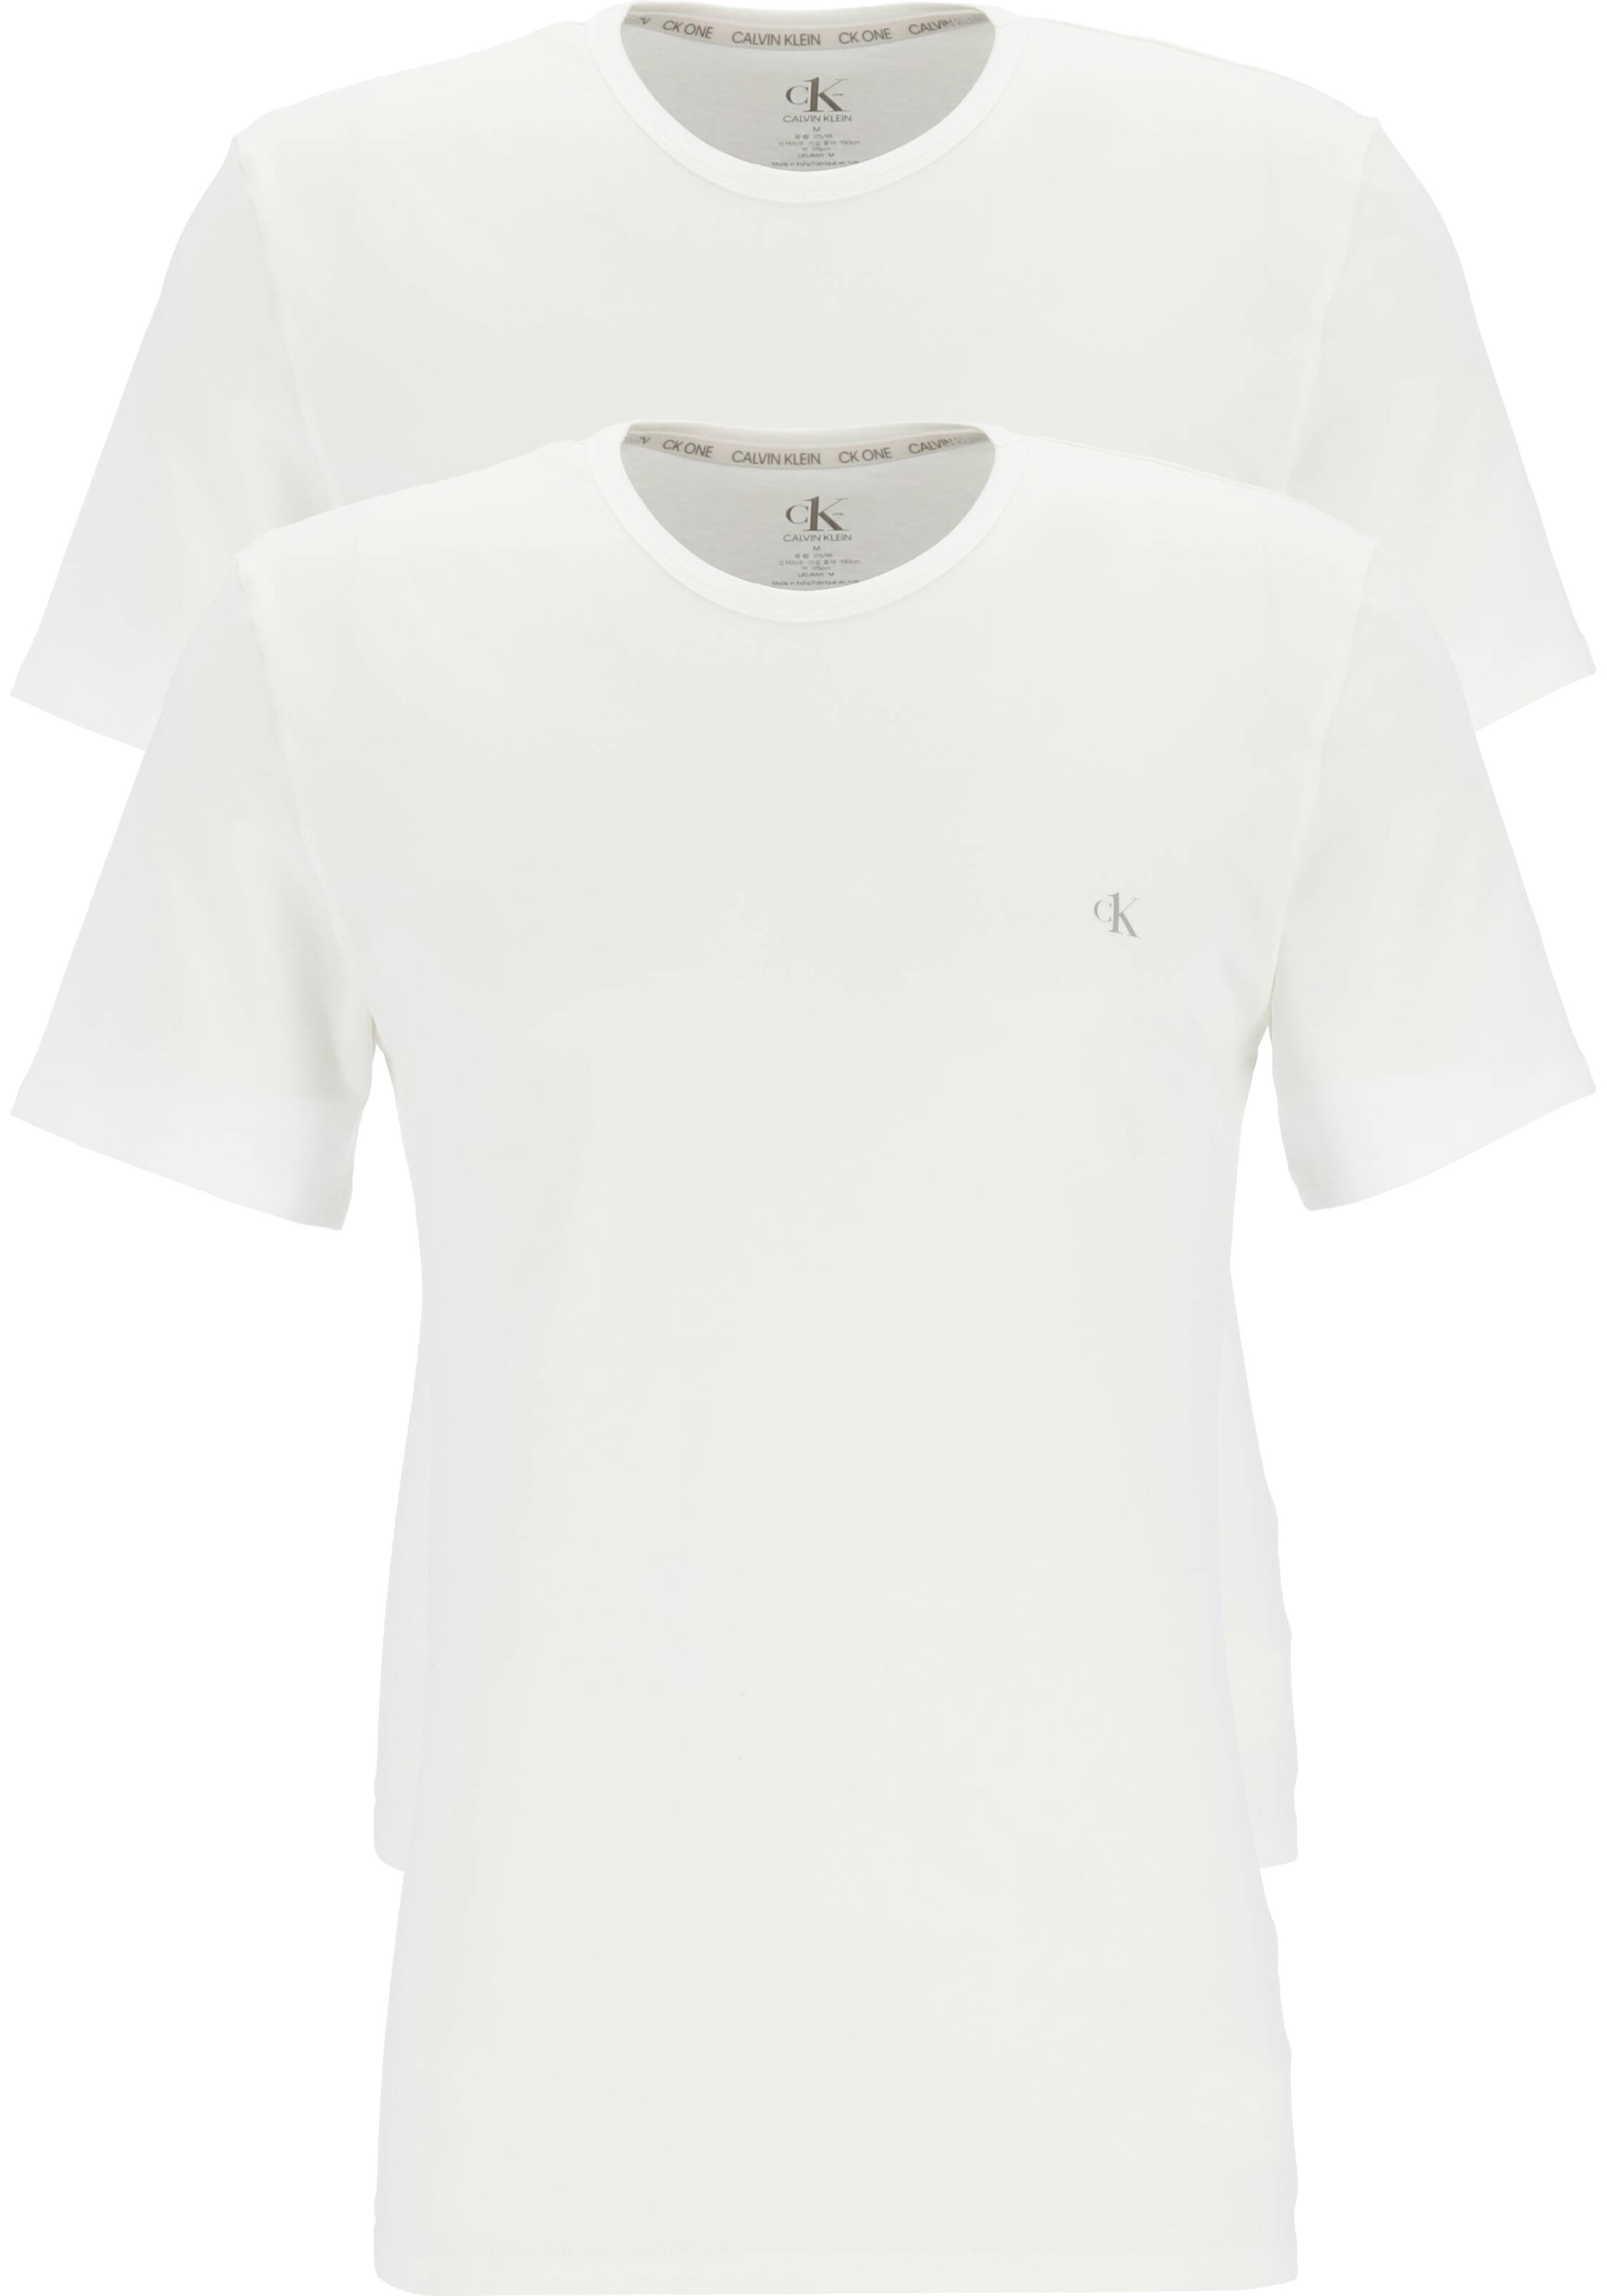 stap in Knorrig Zeeanemoon Calvin Klein CK ONE cotton crew neck T-shirts (2-pack), heren T-shirts... -  vakantie DEALS: bestel vele artikelen van topmerken met korting